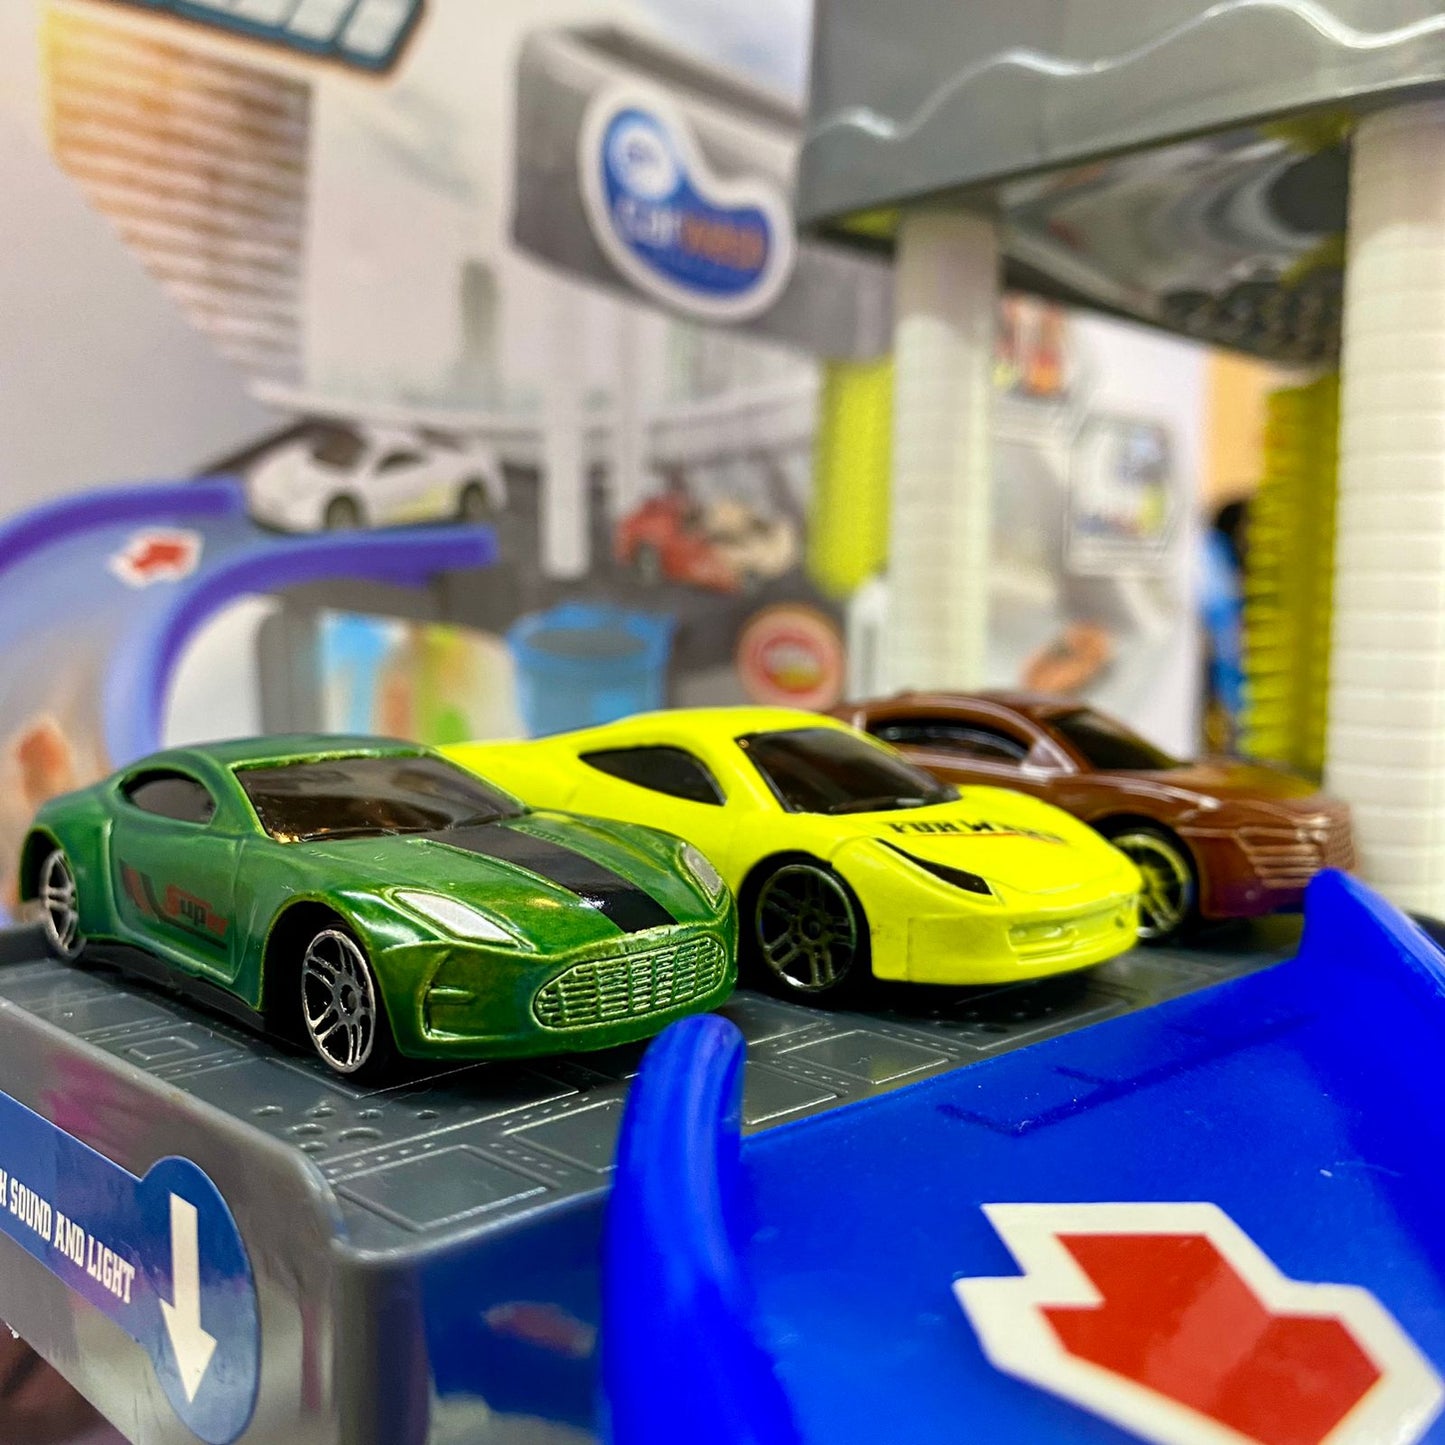 CarWash 2 Niveles con carros que cambian de color + Envio Gratis